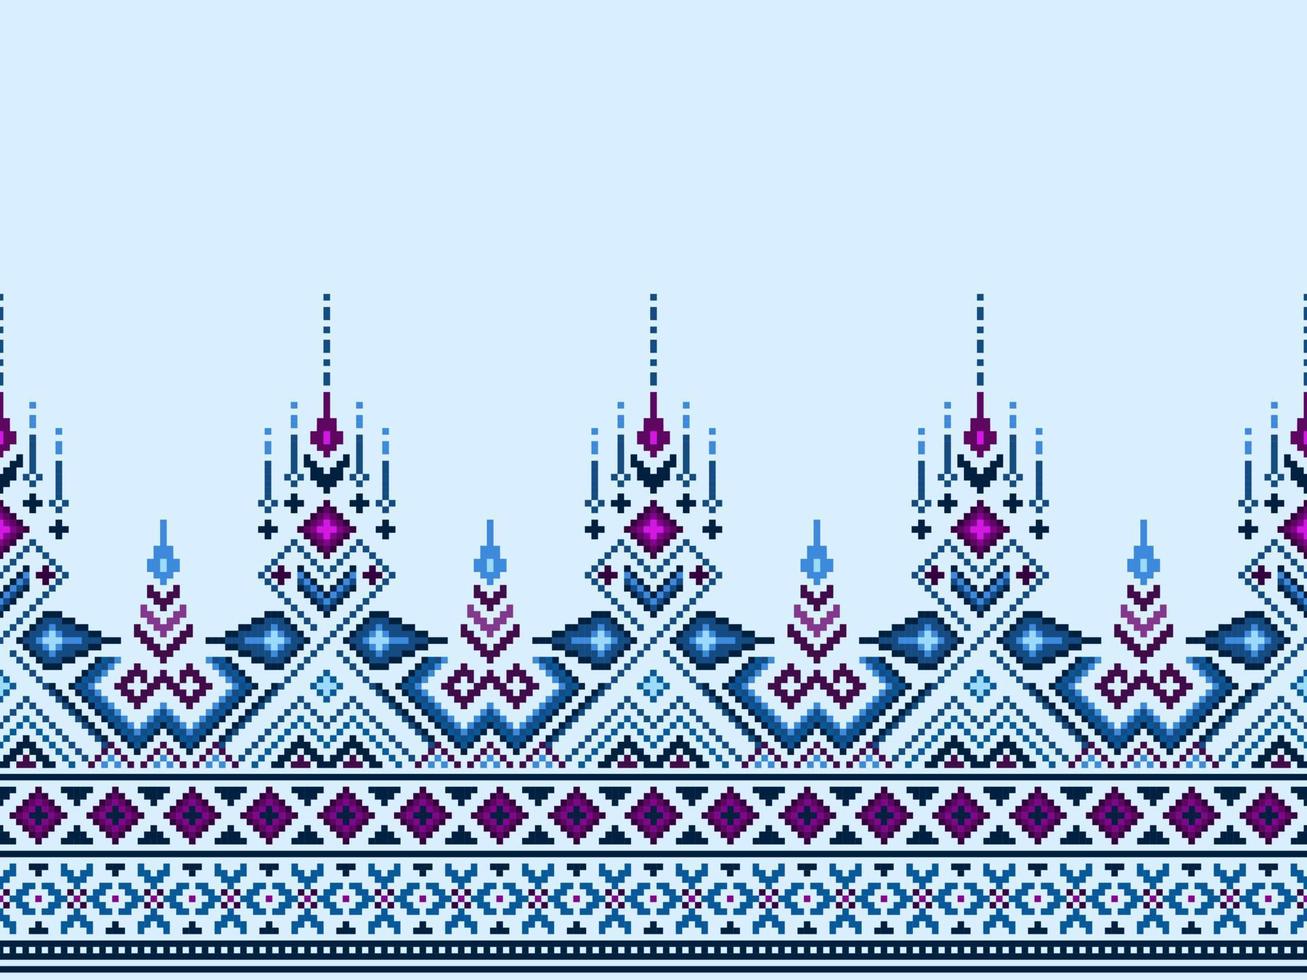 Kreuz Stich und Pixel ethnisch Muster bringen beschwingt Stil zu Stoffe, Saris, und Ikat Entwürfe, Blau Kreuz Stich Farbe. traditionell Design. vektor